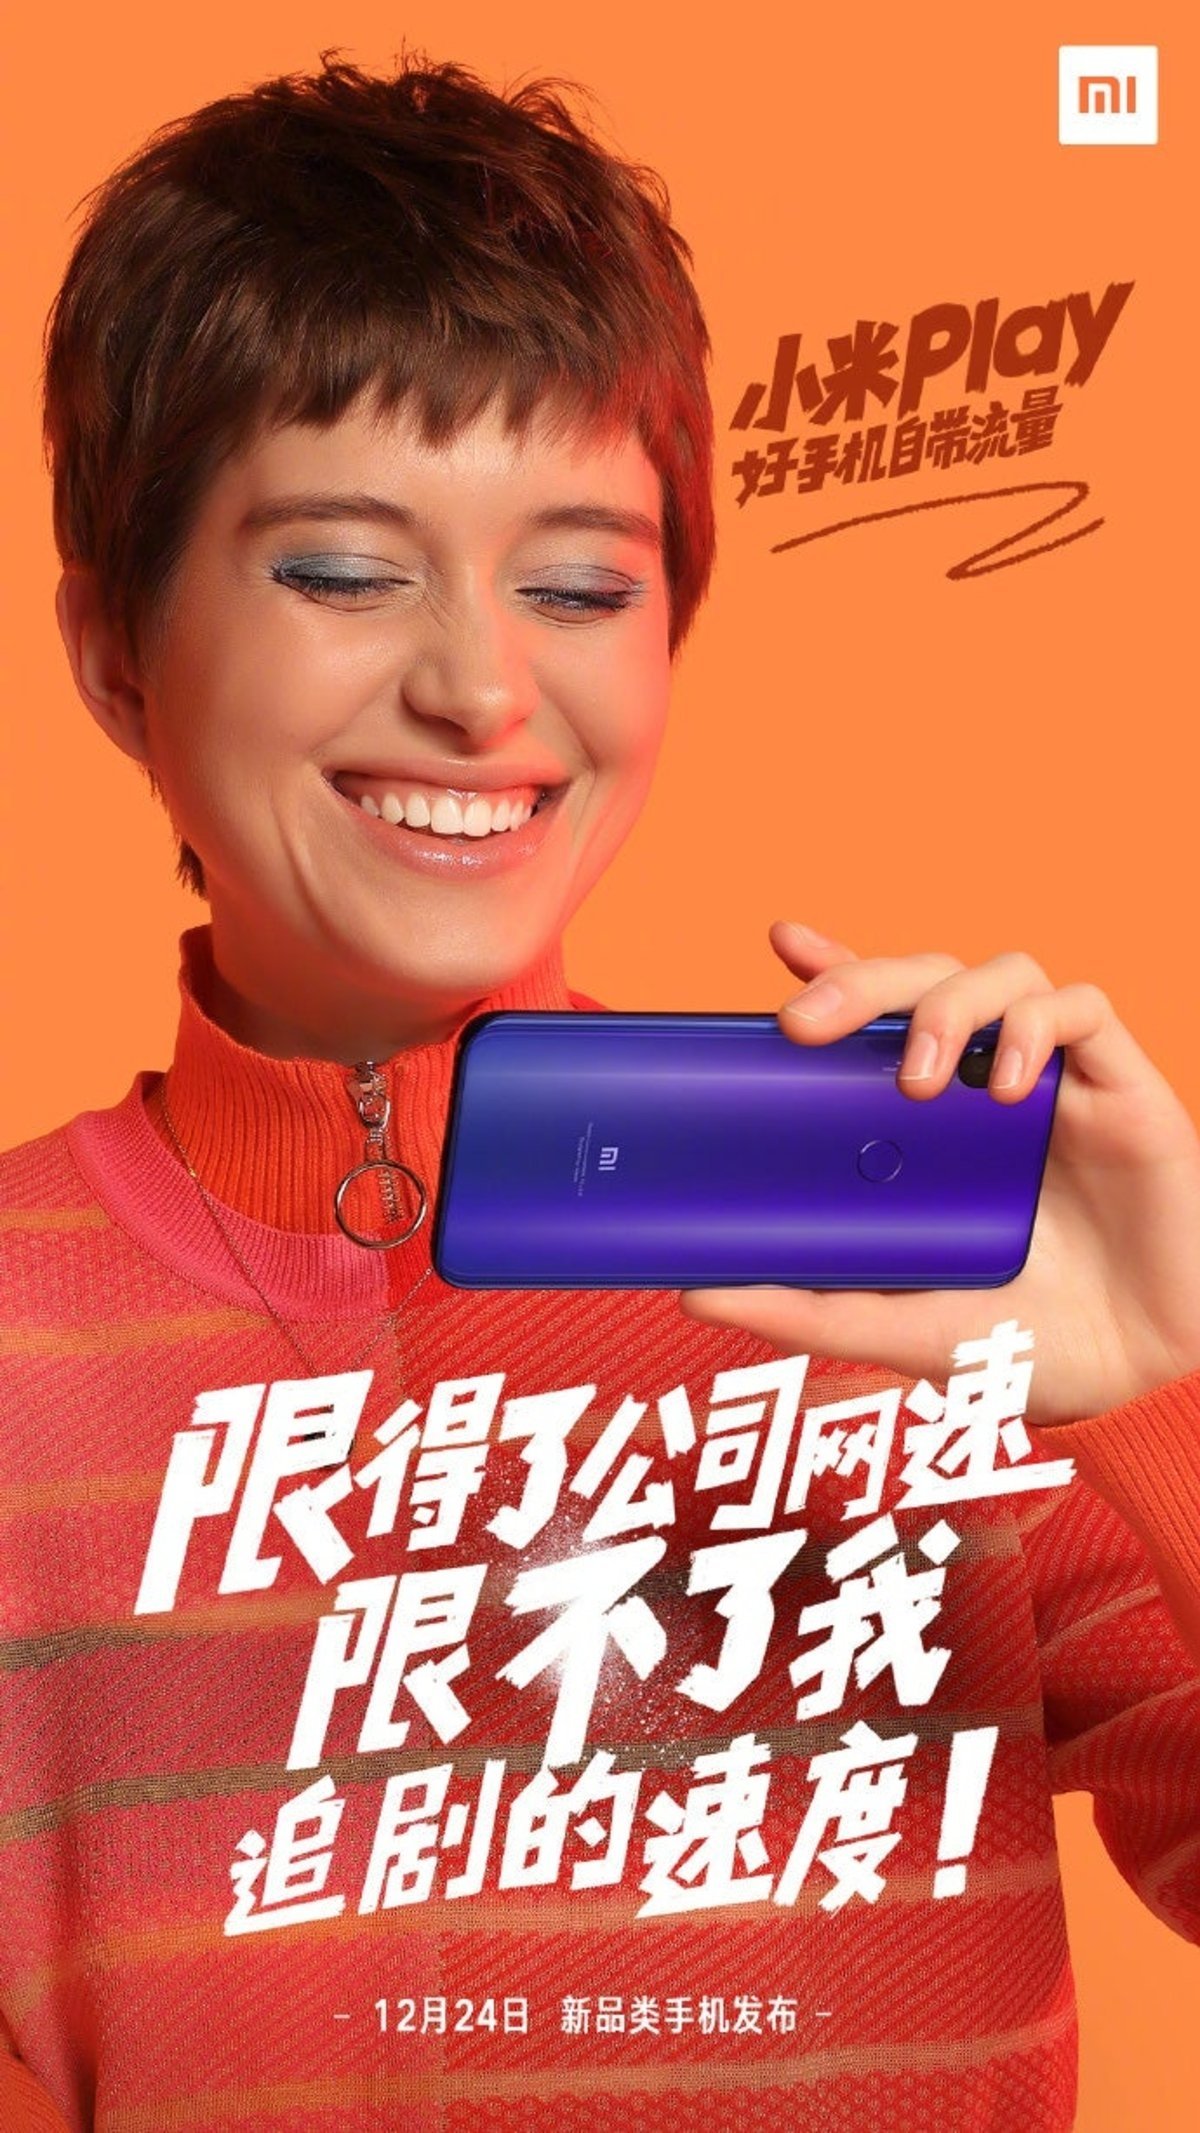 El Xiaomi Play muestra su diseño al completo en unas imágenes promocionales